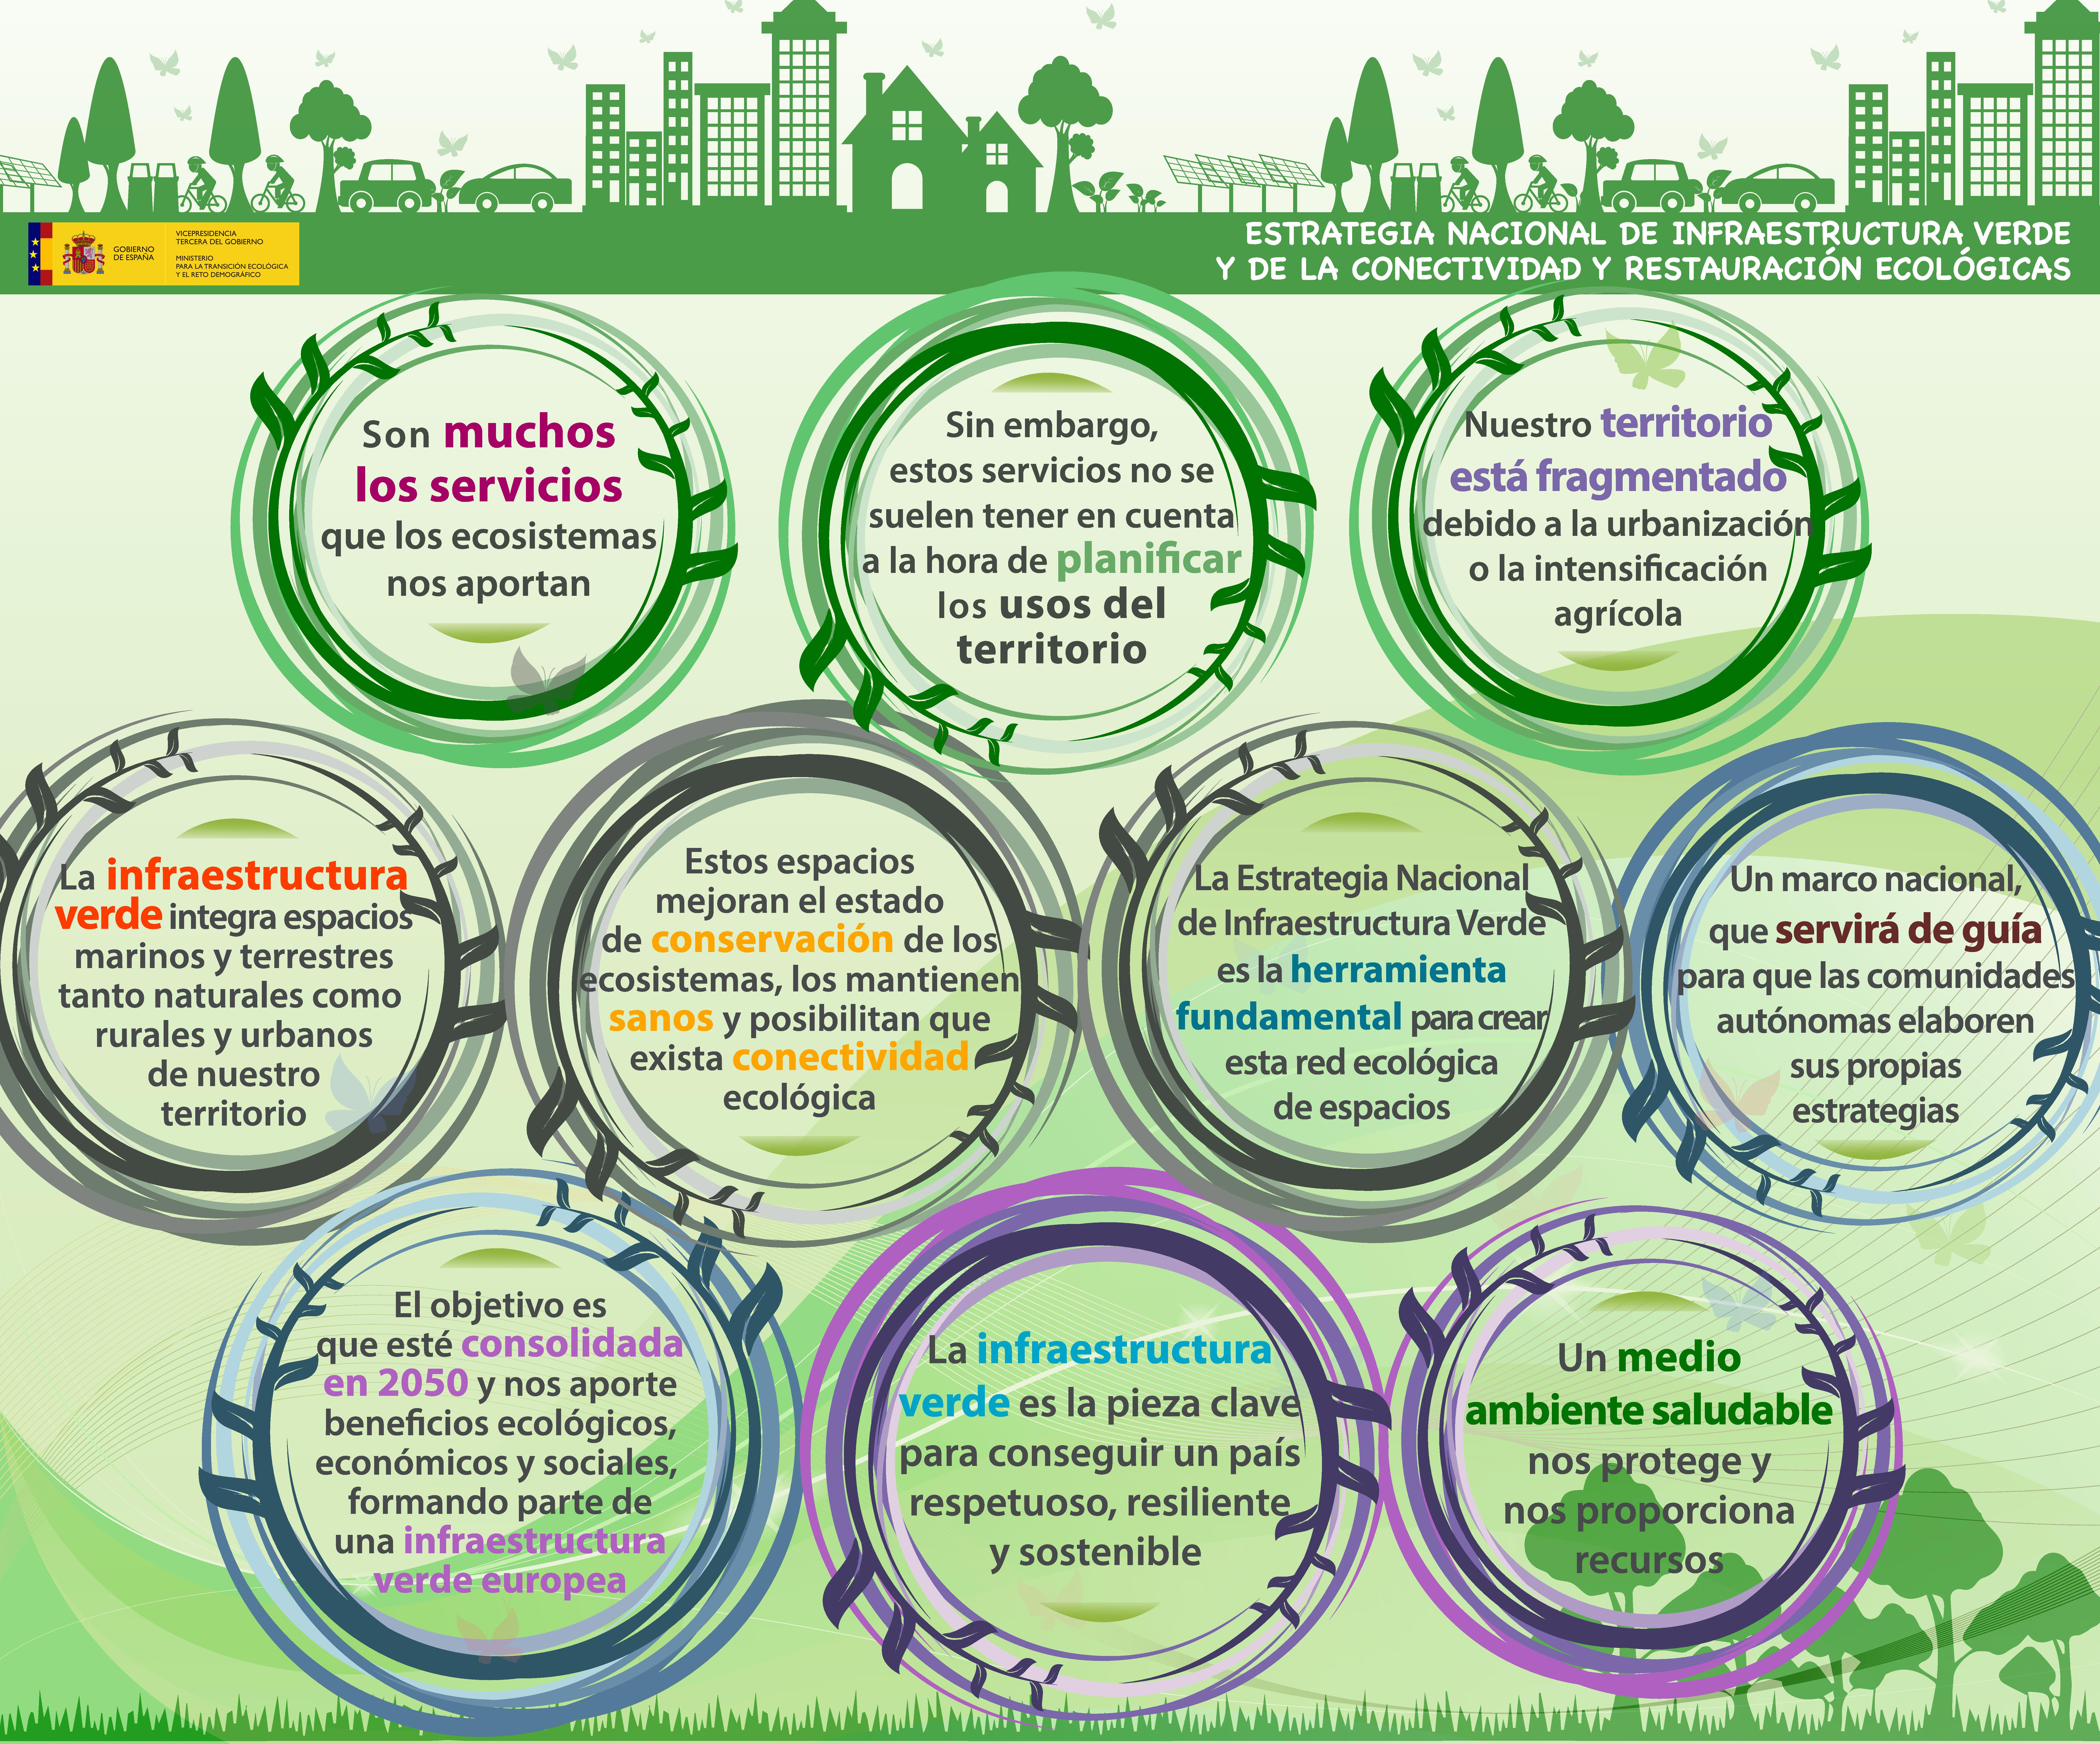 Infografía sobre la Estrategia Nacional de Infraestructura Verde y de la Conectividad y Restauración Ecológicas